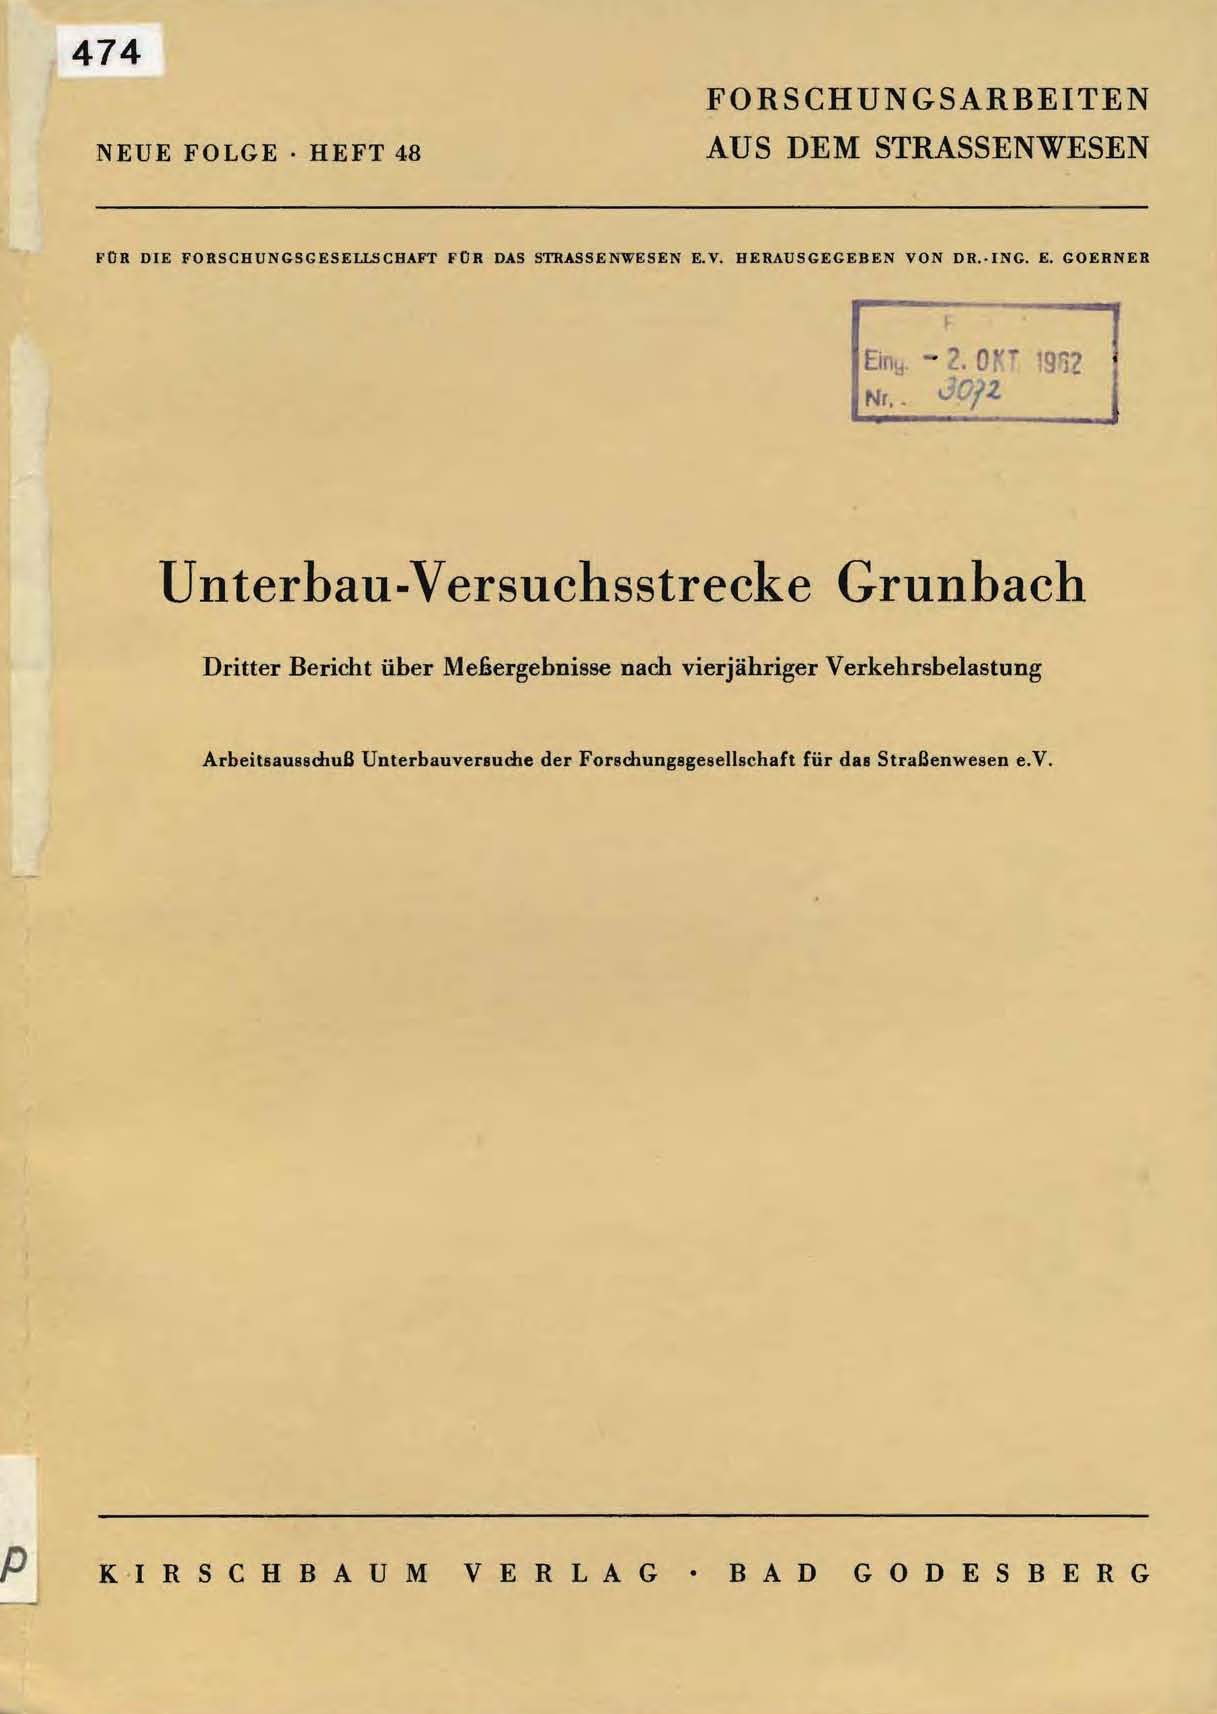 Unterbau-Versuchsstrecke Grunbach, Dritter Bericht über Meßergebnisse nach vierjähriger Verkehrsbelastung